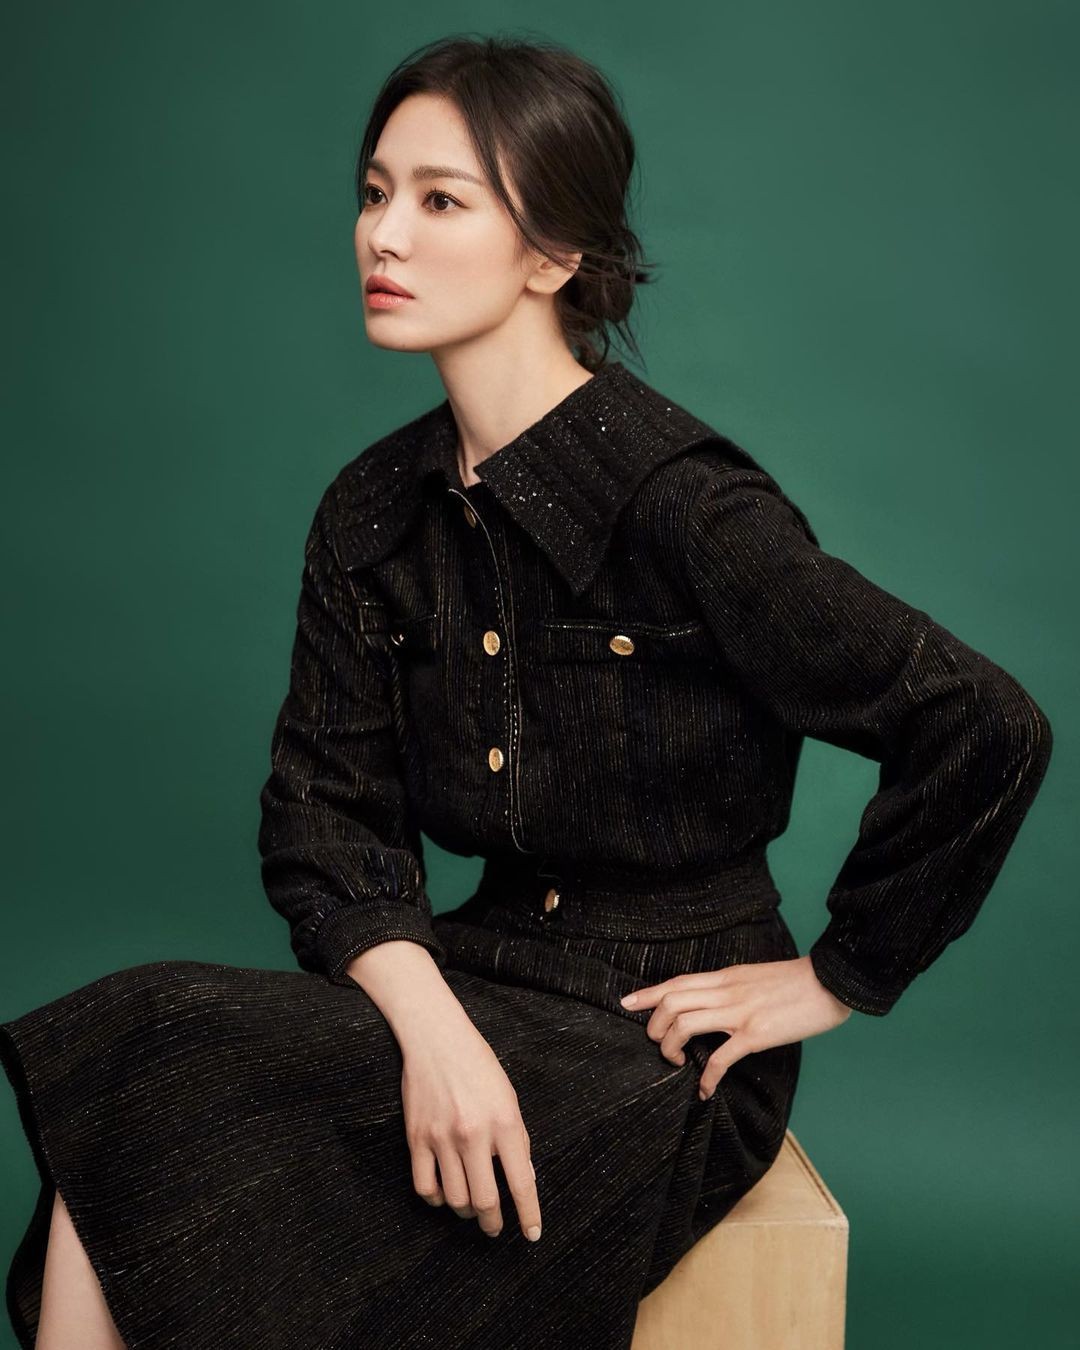 Song Hye Kyo khoe vóc dáng đẹp không tì vết, nhan sắc 'hack tuổi' như gái đôi mươi, khẳng định vị thế mỹ nhân hàng đầu Kbiz-2